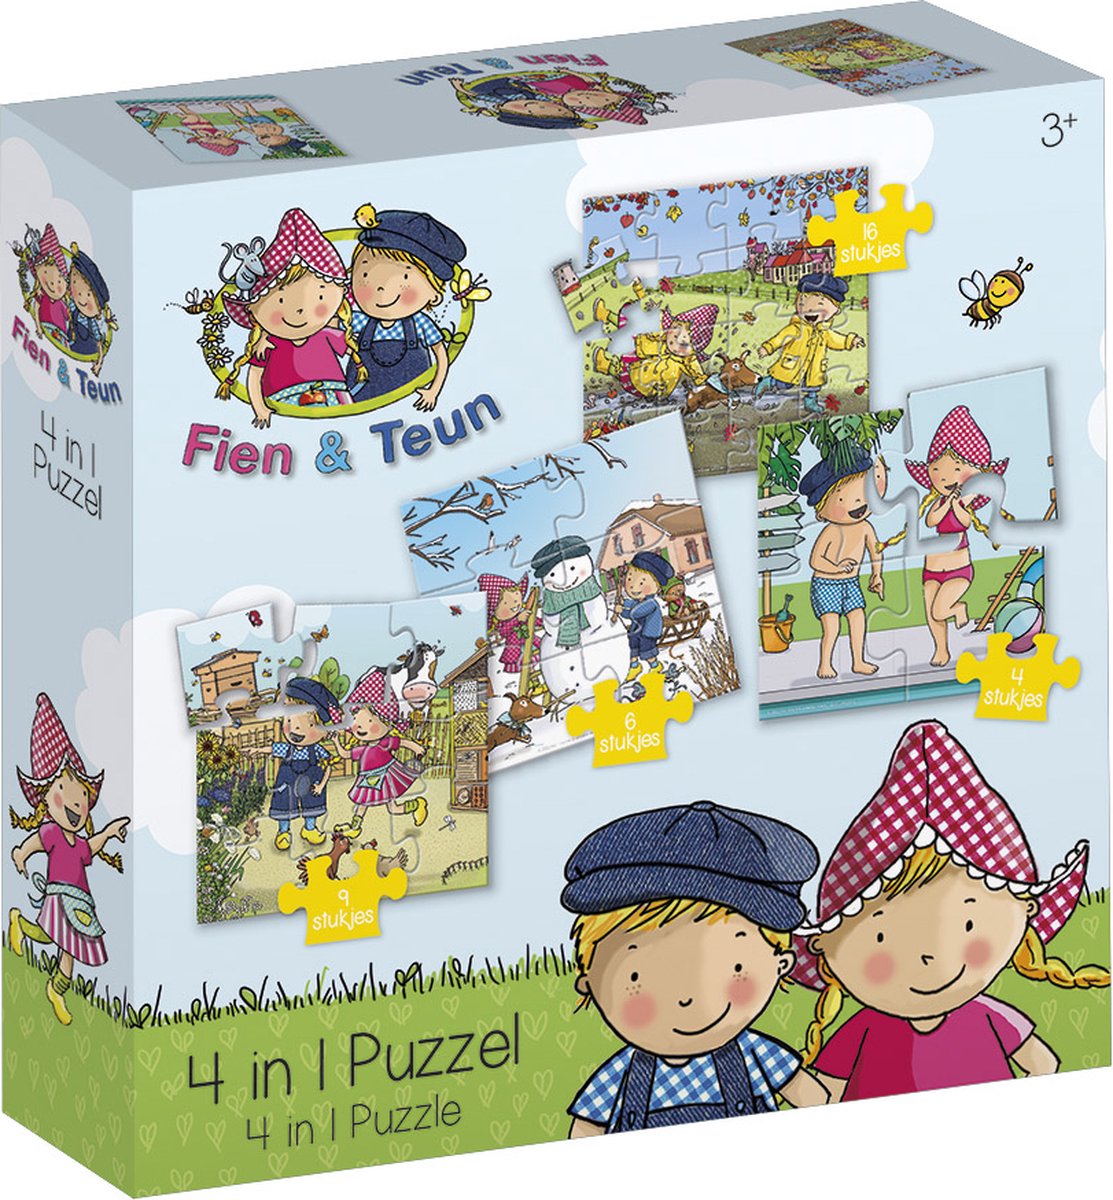 Fien & Teun puzzel 4 in 1 educatief peuter speelgoed - kinderpuzzel  4x6x9x16 stukjes... | bol.com